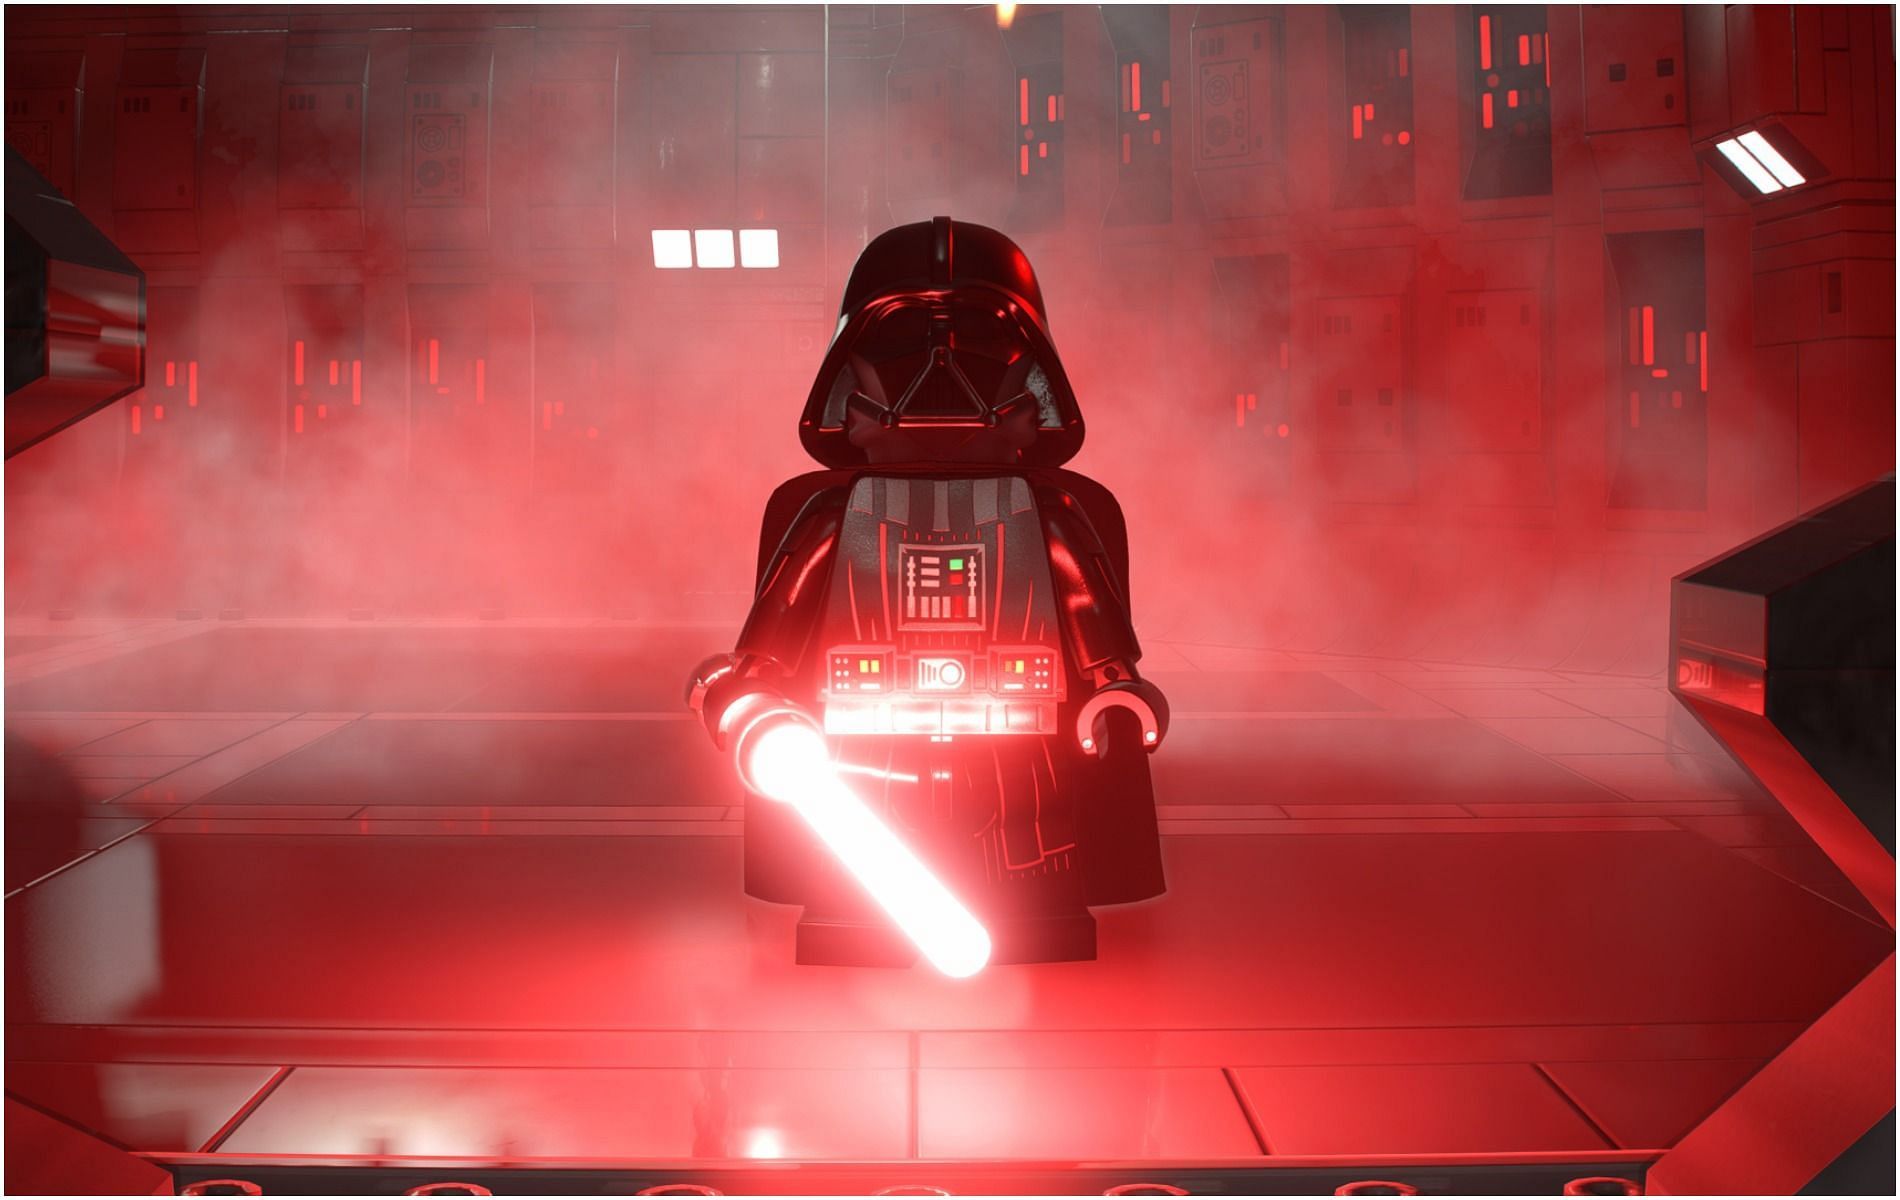 LEGO Star Wars: The Skywalker Saga delivers humor and action in equal measures (Image via Warner Bros)